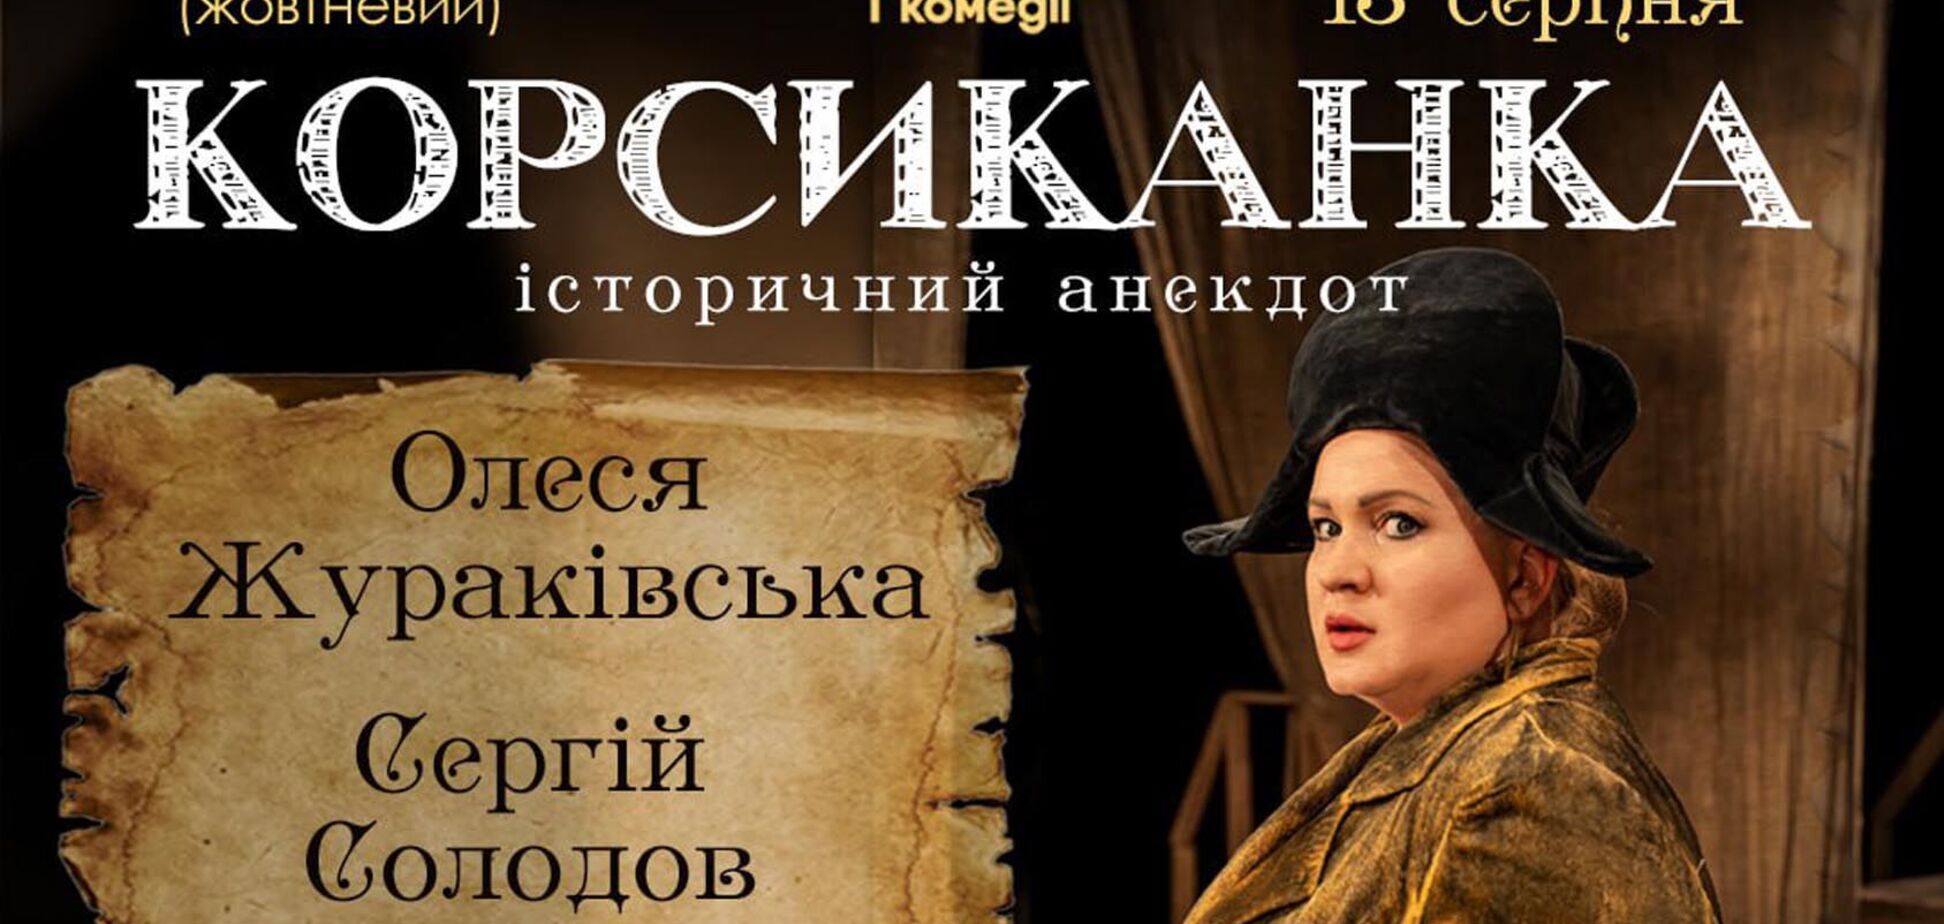 Знаменитый спектакль 'Корсиканка': в Киеве состоится бенефис Олеси Жураковской в день ее рождения